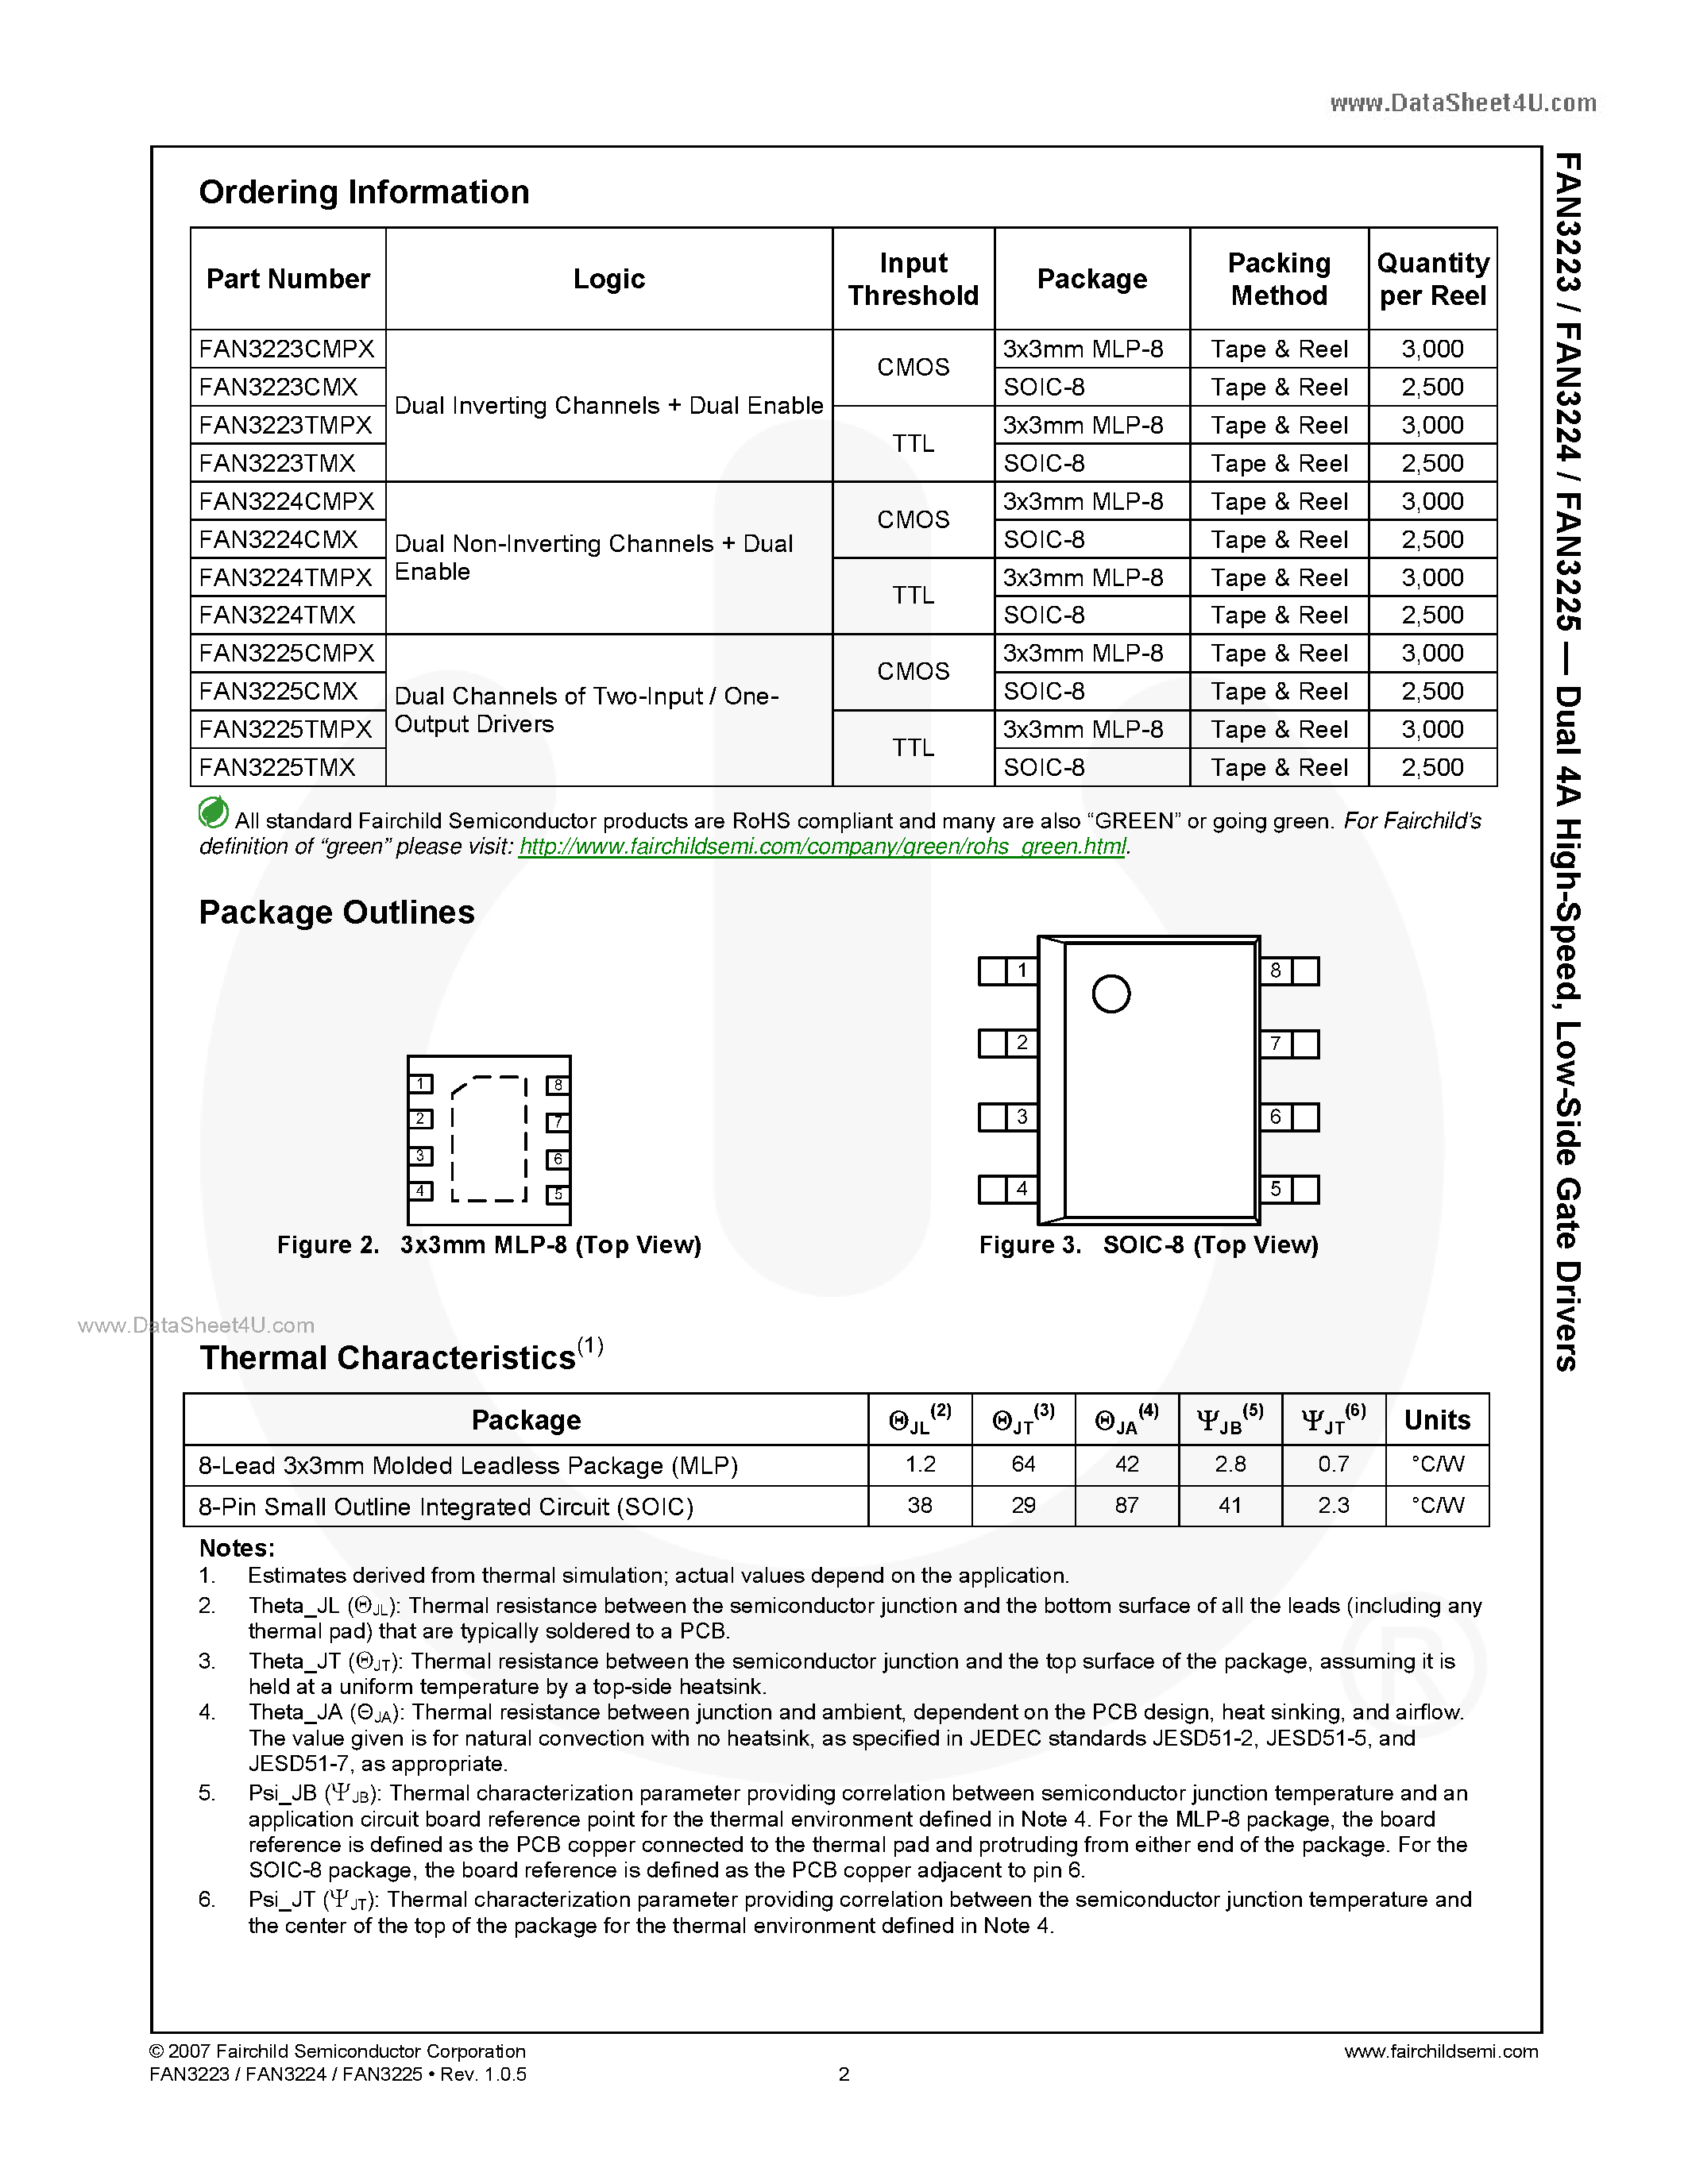 Datasheet FAN3223 - (FAN3223 - FAN3225) Low-Side Gate Drivers page 2